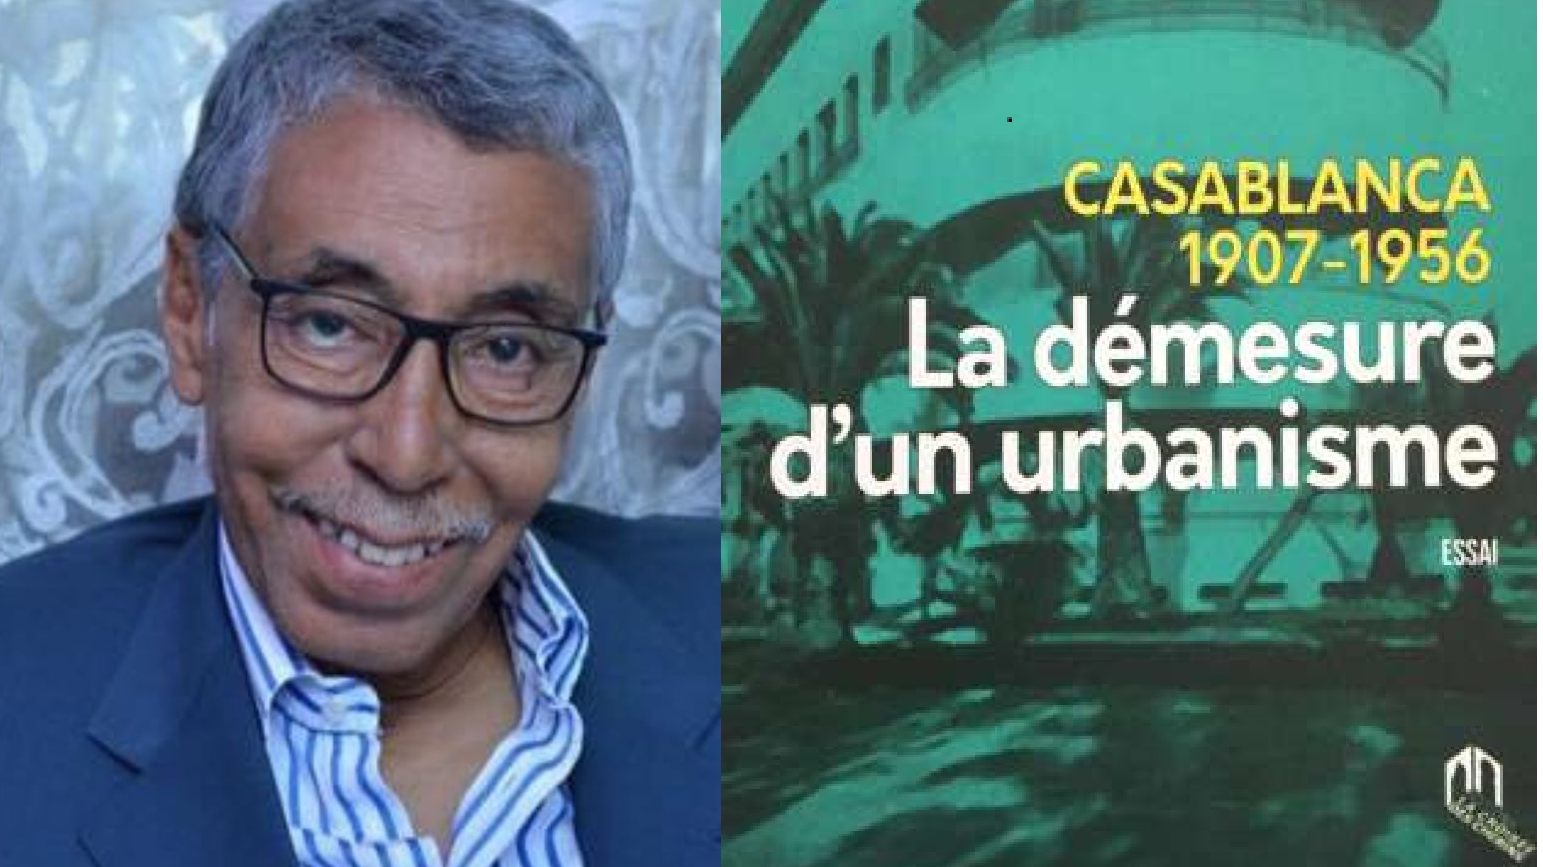 Ouvrage "Casablanca, la démesure d'un urbanisme": 3 questions à l'auteur  Ahmed Hamid Chitachni